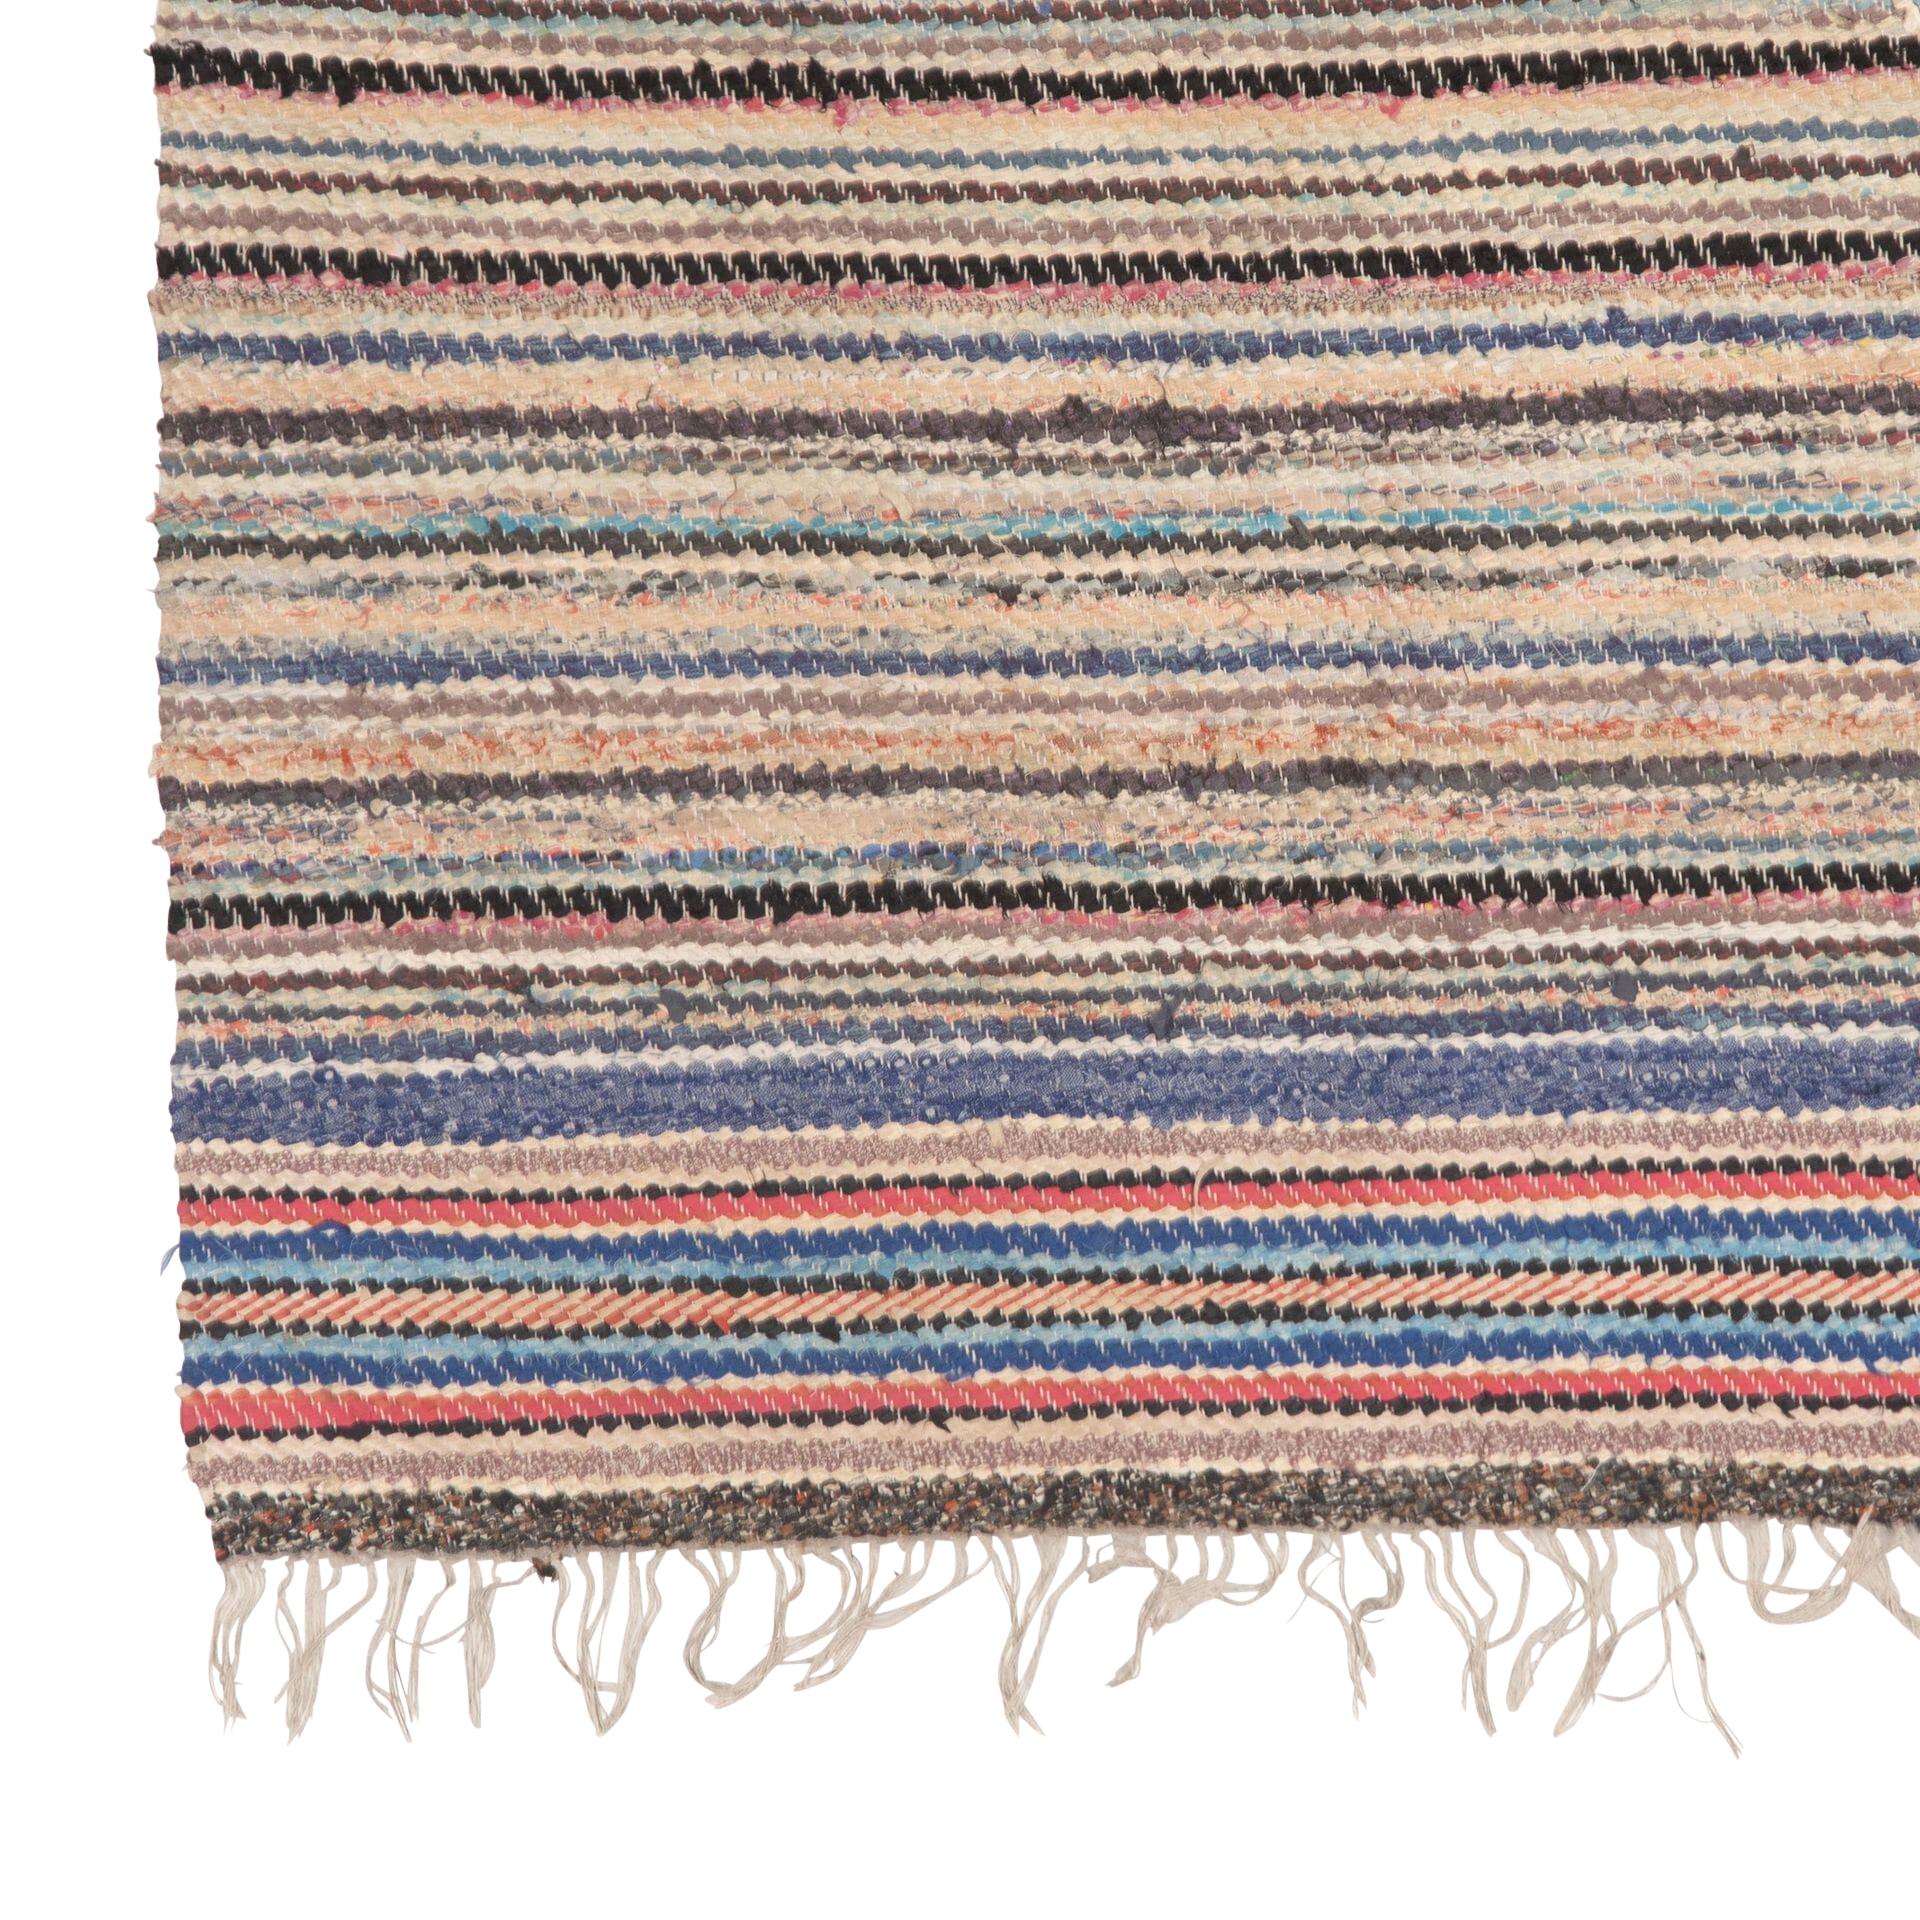 Traditioneller schwedischer Teppich des 20. Jahrhunderts in Blau, Rosa, Schwarz und Grau. 
Mit durchgehendem Streifendesign. 